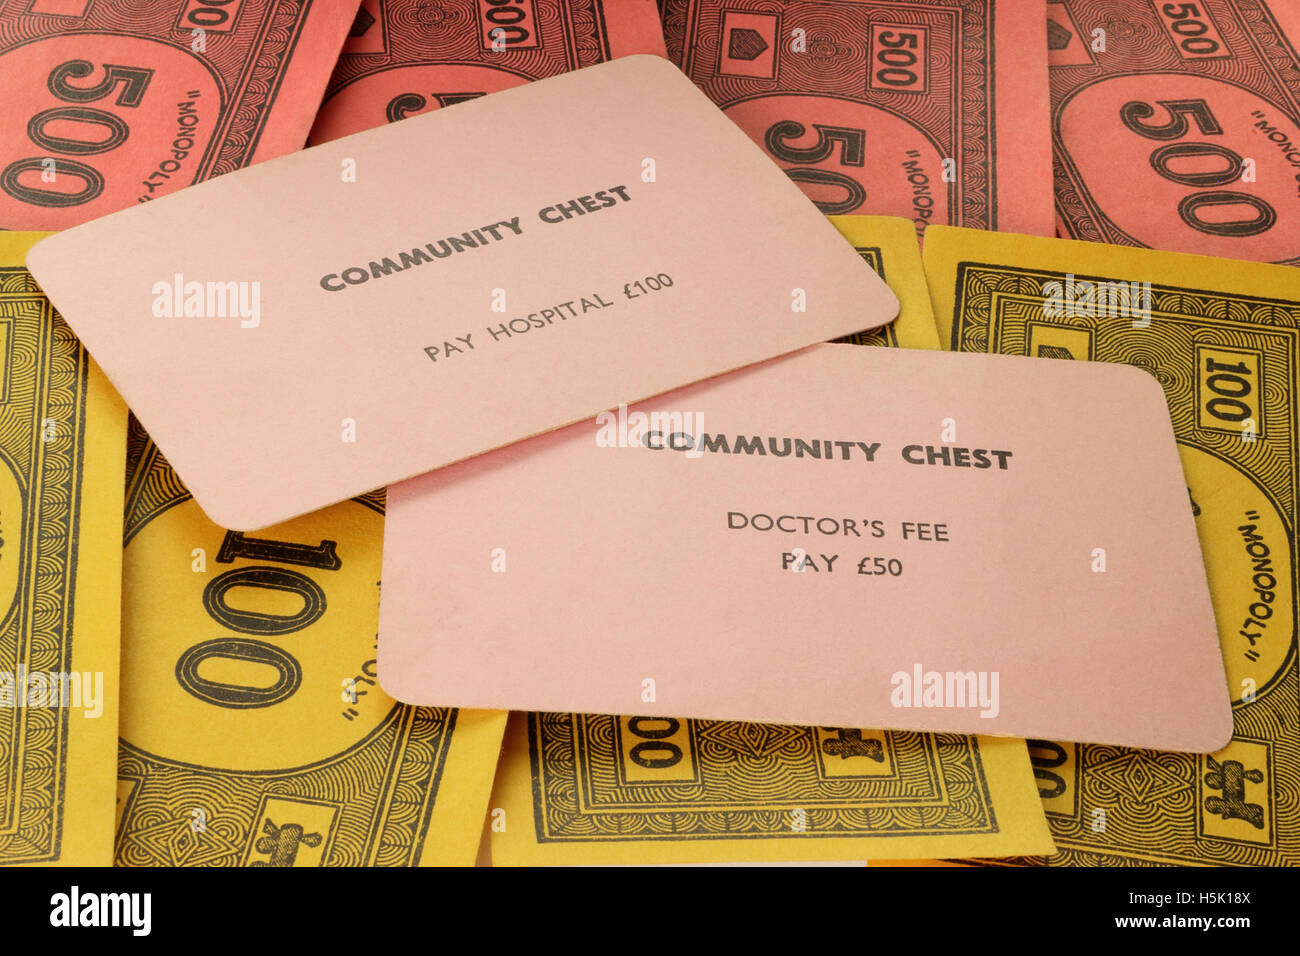 Jeu de Monopoly vintage britannique (Community Chest cartes pour frais médicaux) vers 1940 Banque D'Images